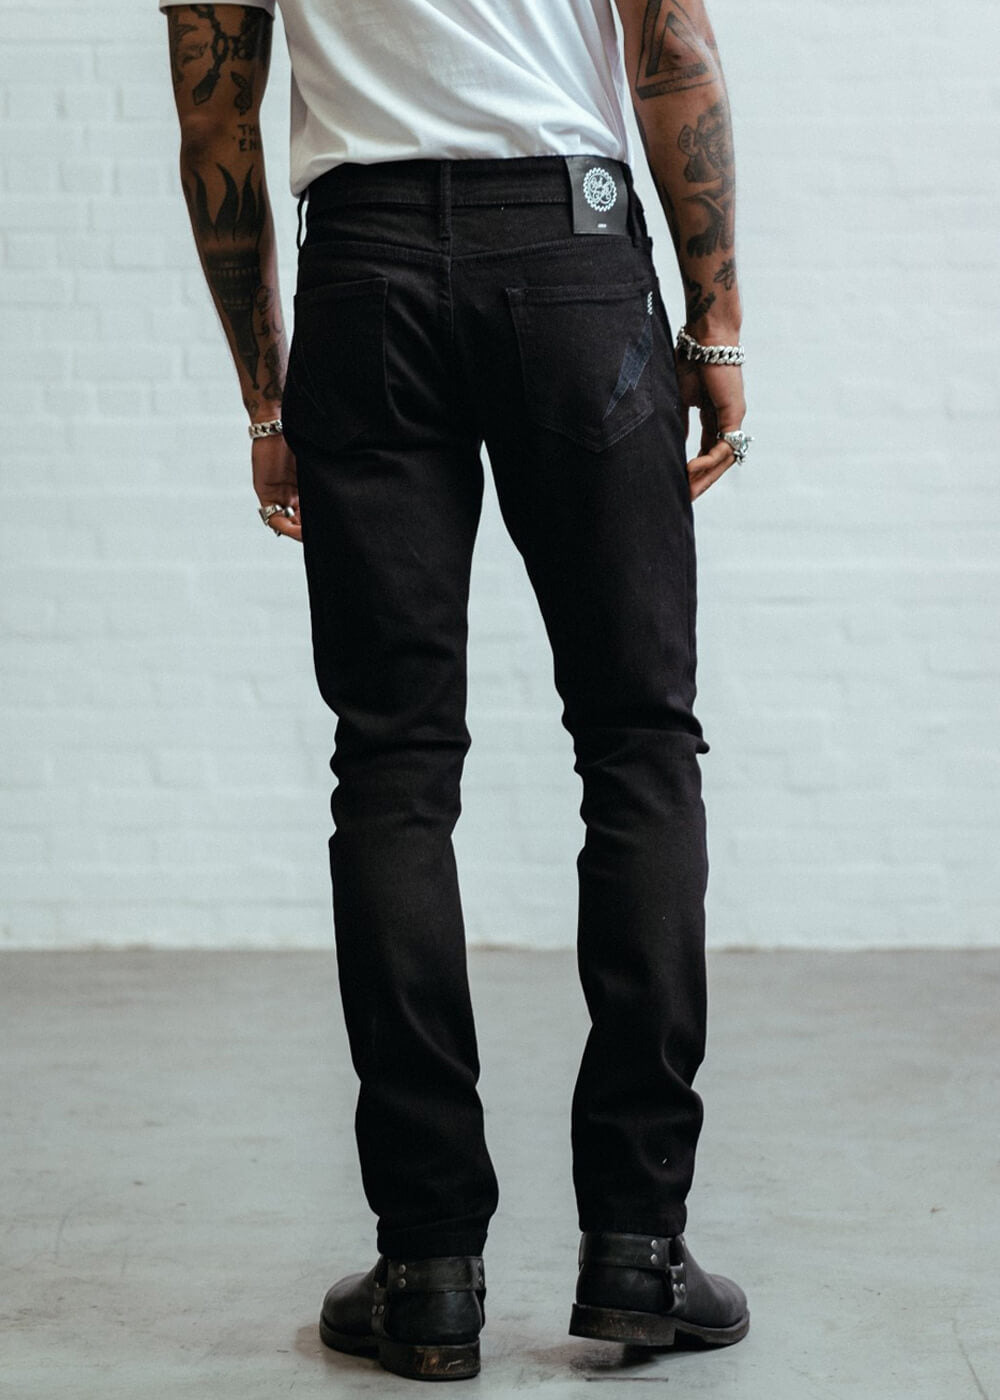 Chet Rock Mens Rockstar Jeans Black –